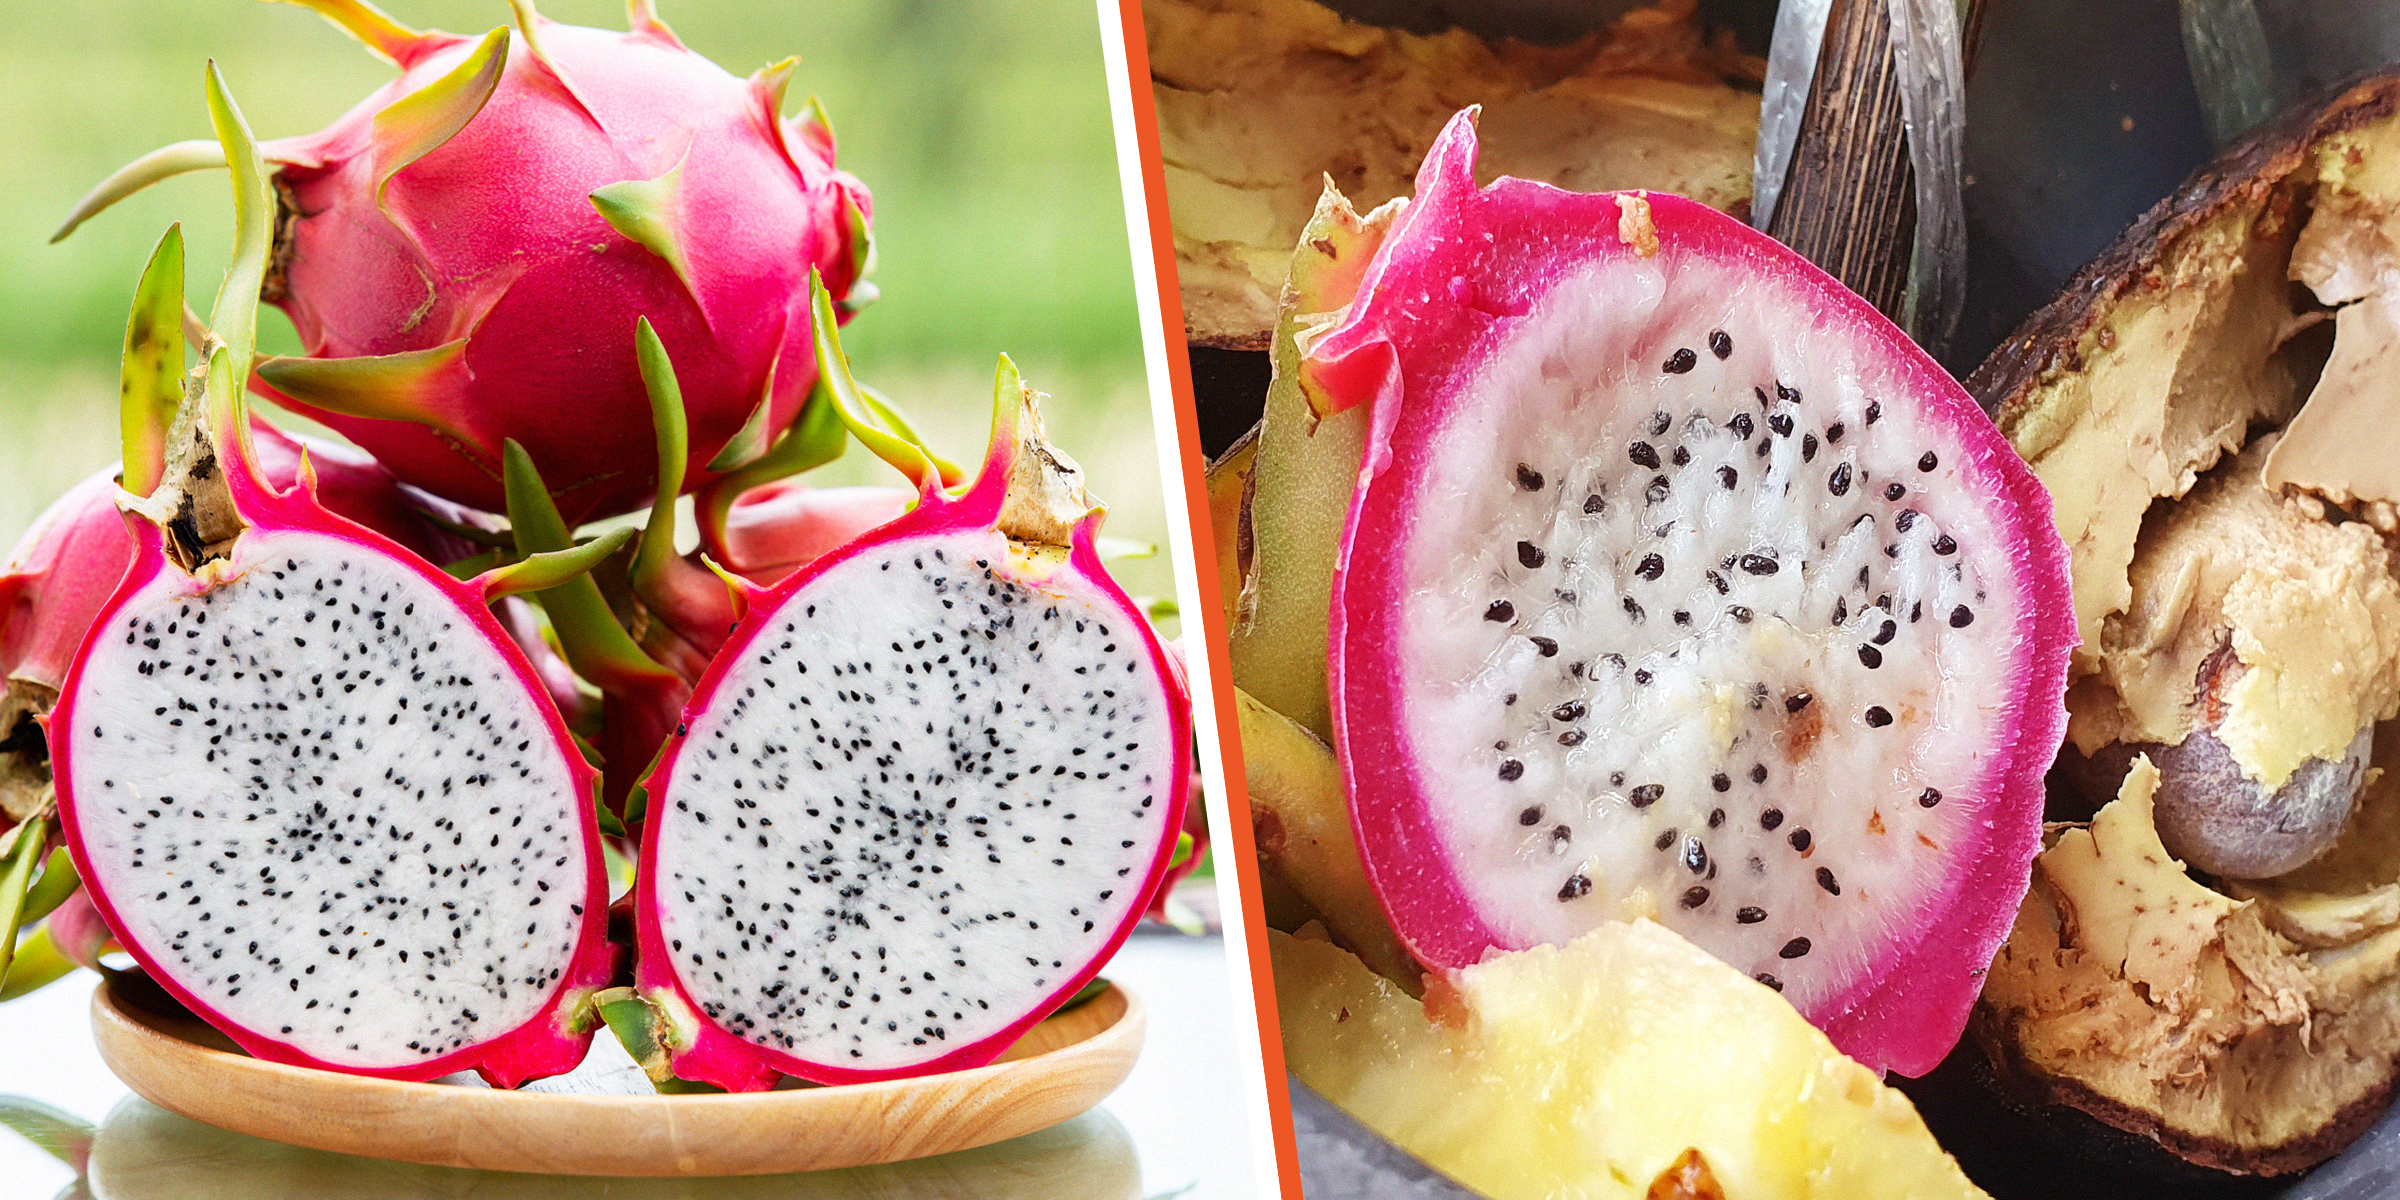 Fresh dragon fruit | Spoiling dragon fruit | Source: Shutterstock